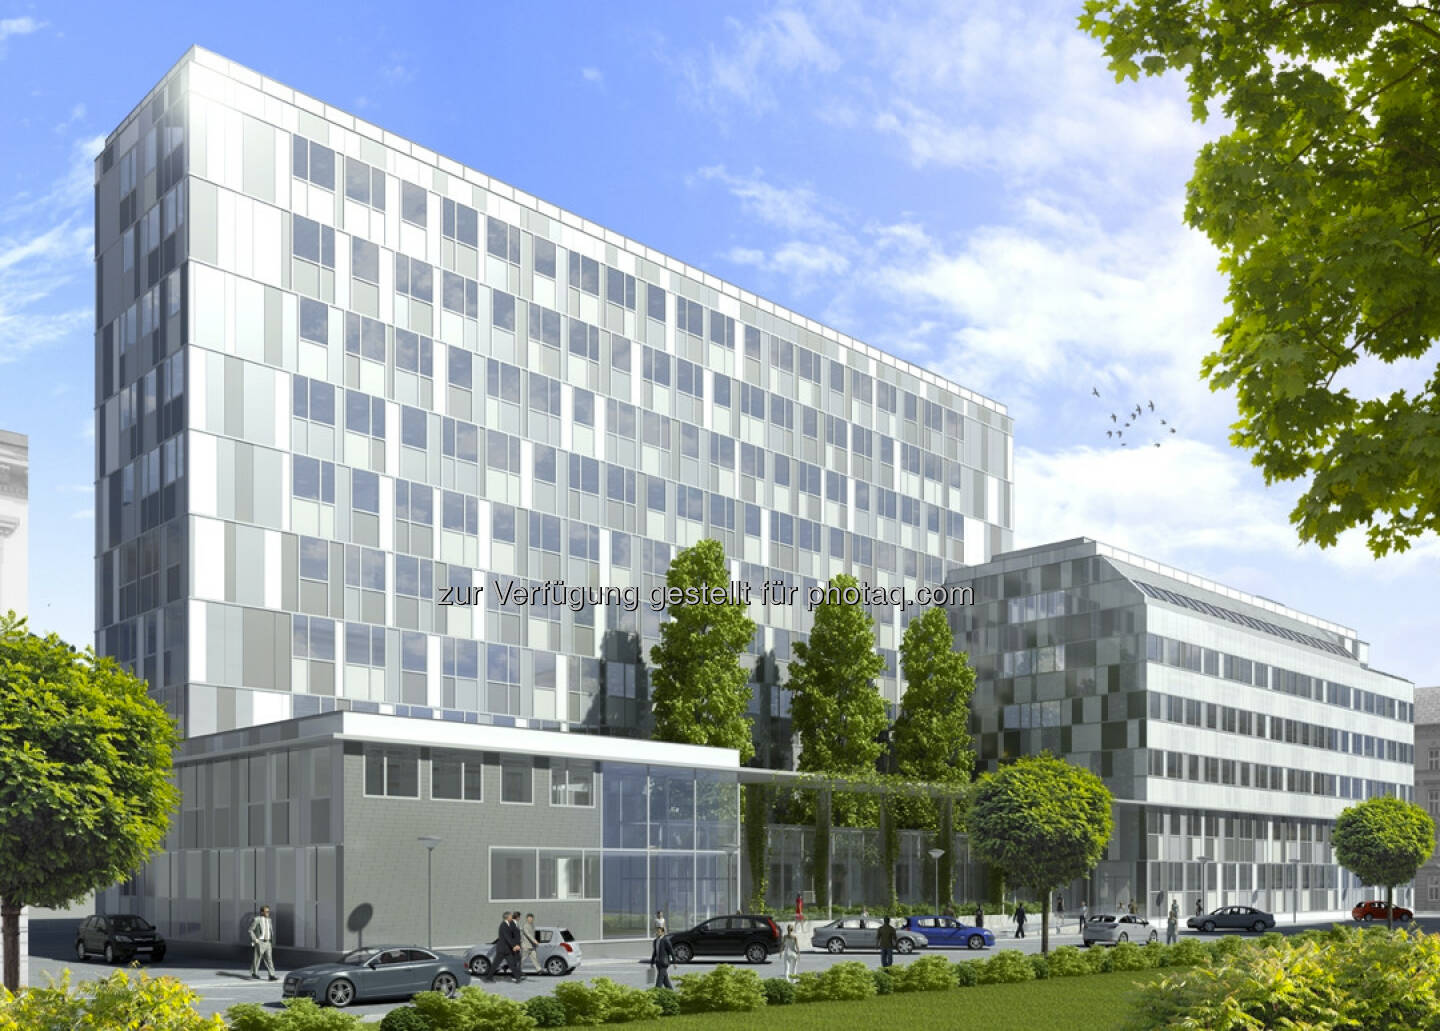 CA Immo vermietet 21.500 m² im Wiener Bürogebäude Silbermöwe an Bosch (c) CA Immo